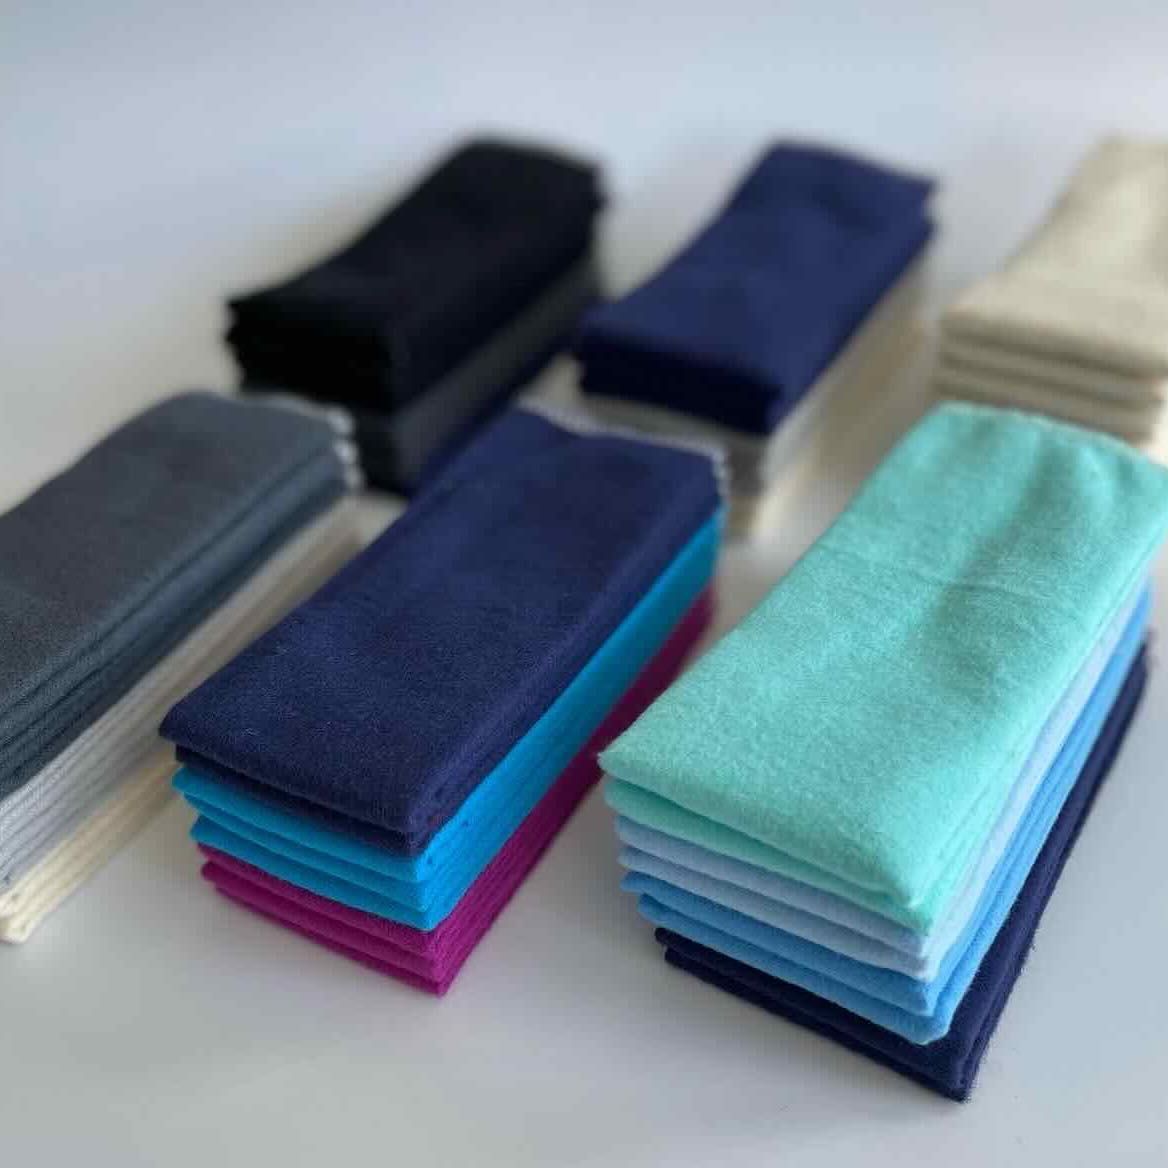 https://www.aiteall.ca/cdn/shop/files/cheeks-ahoy-unpaper-towels-in-variety-of-colors_da211978-e52d-4f1a-a837-d772832d403e.jpg?v=1667332856&width=1500